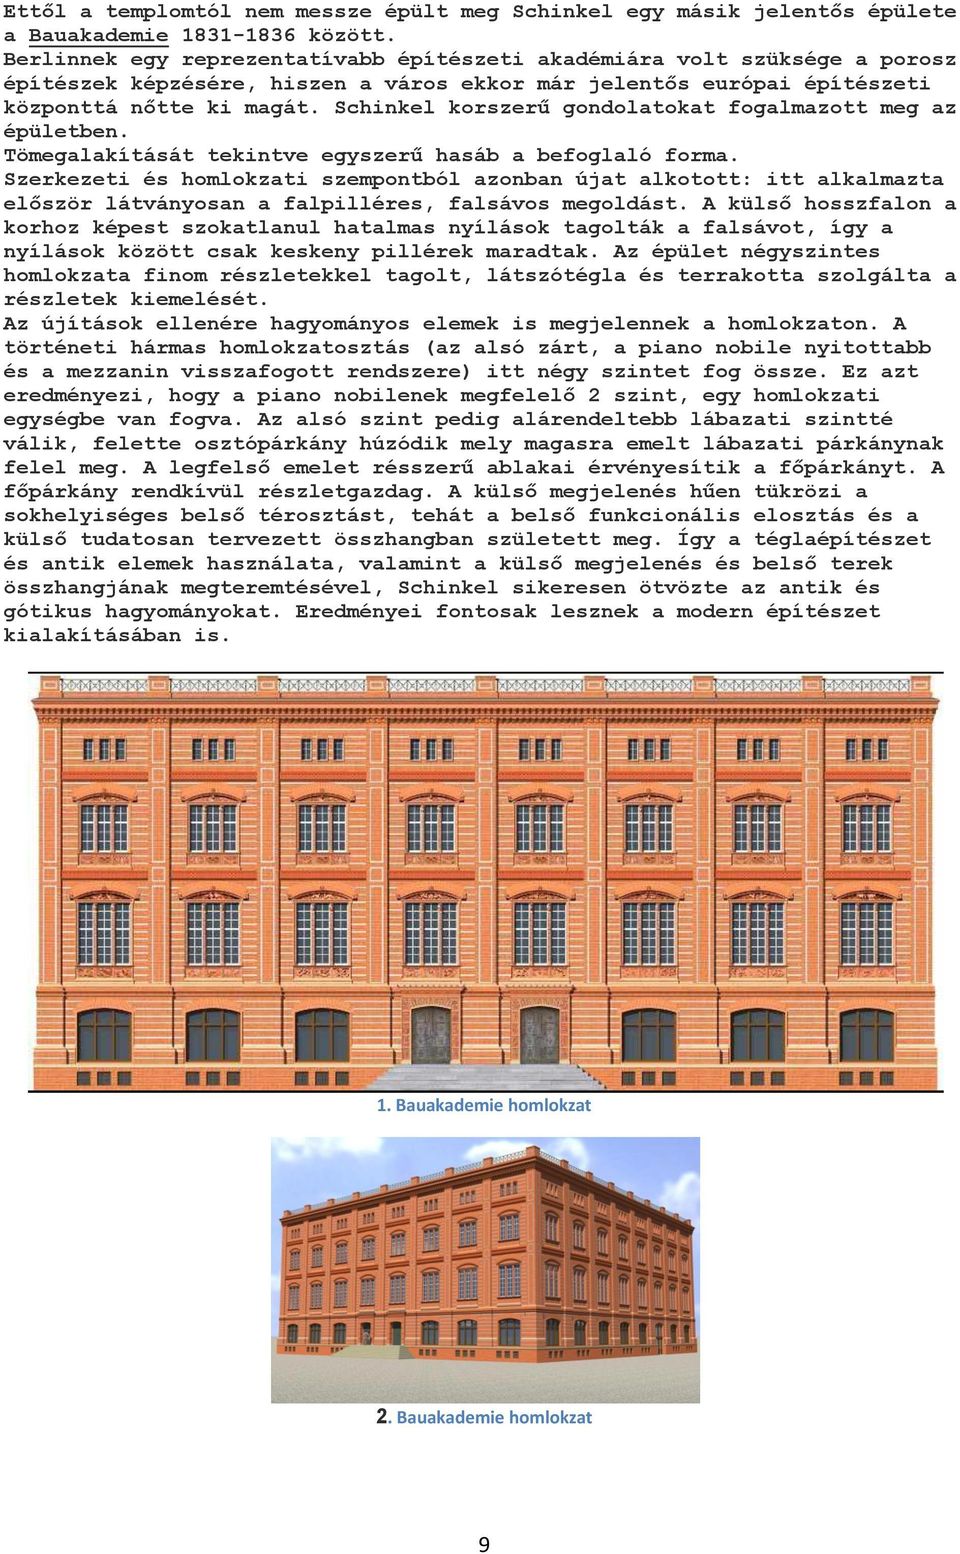 Schinkel korszerű gondolatokat fogalmazott meg az épületben. Tömegalakítását tekintve egyszerű hasáb a befoglaló forma.